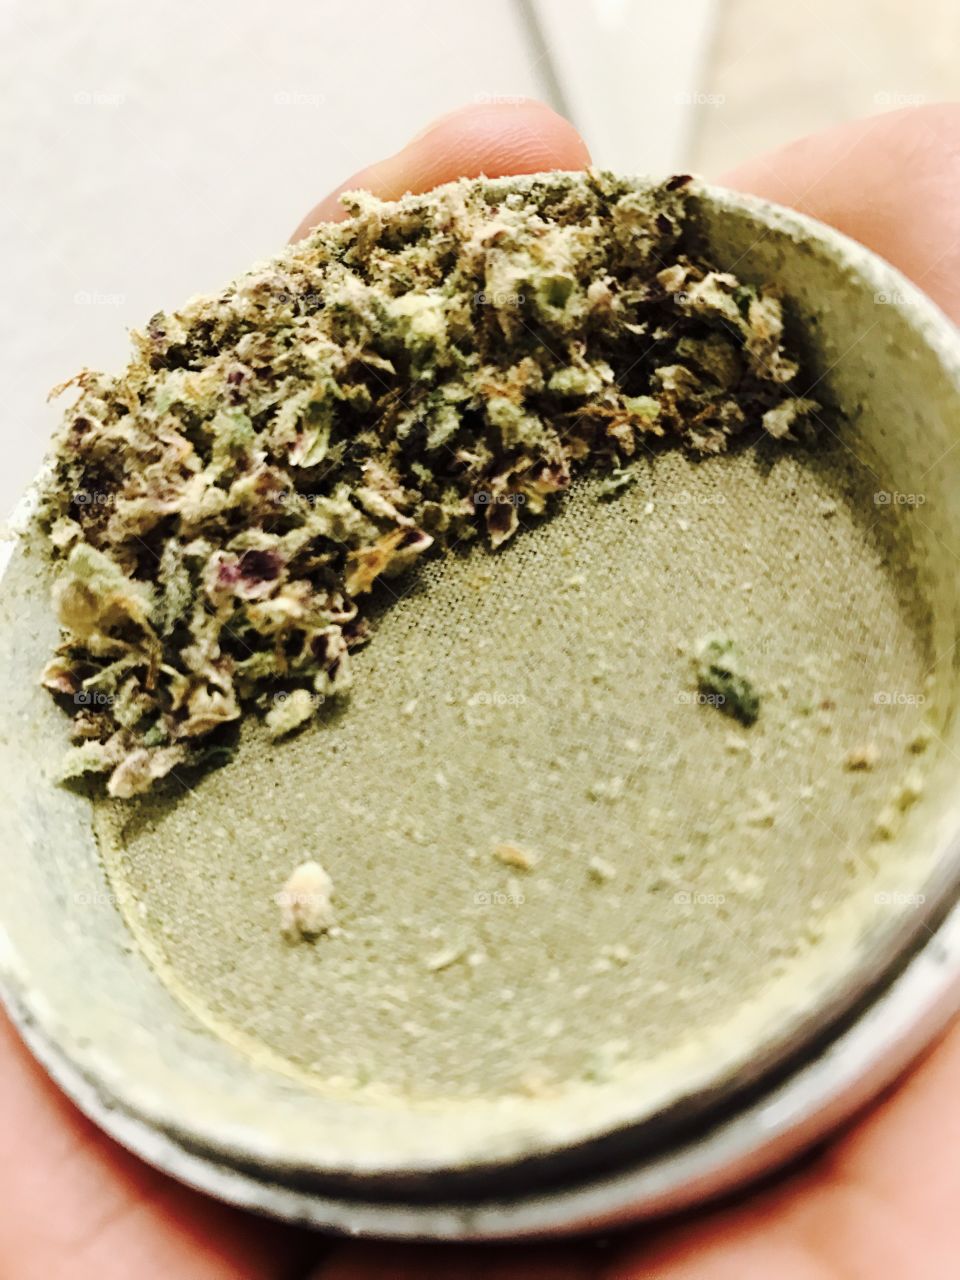 Marijuana
